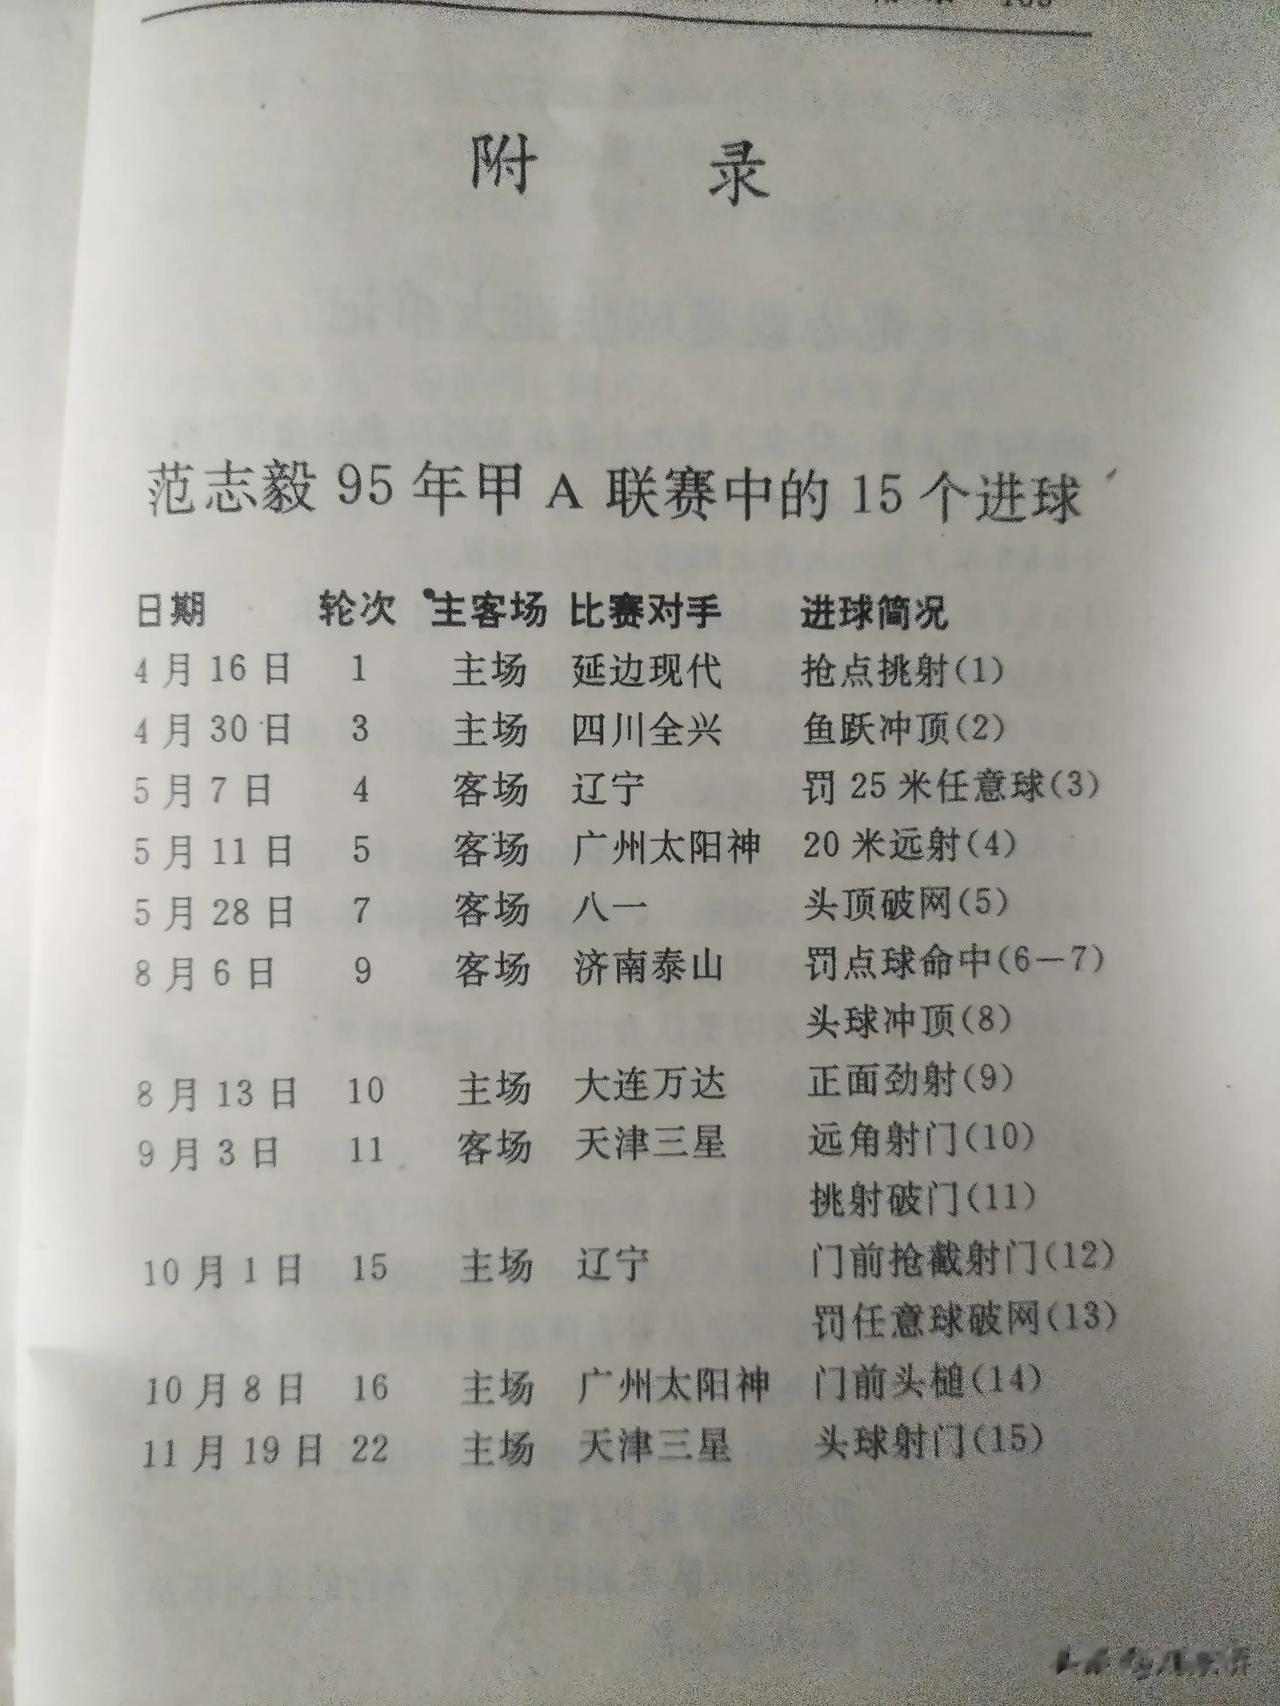 图为范志毅在1995赛季全国甲A联赛进球数据表。

这一年，范志毅不但收获了全国(1)